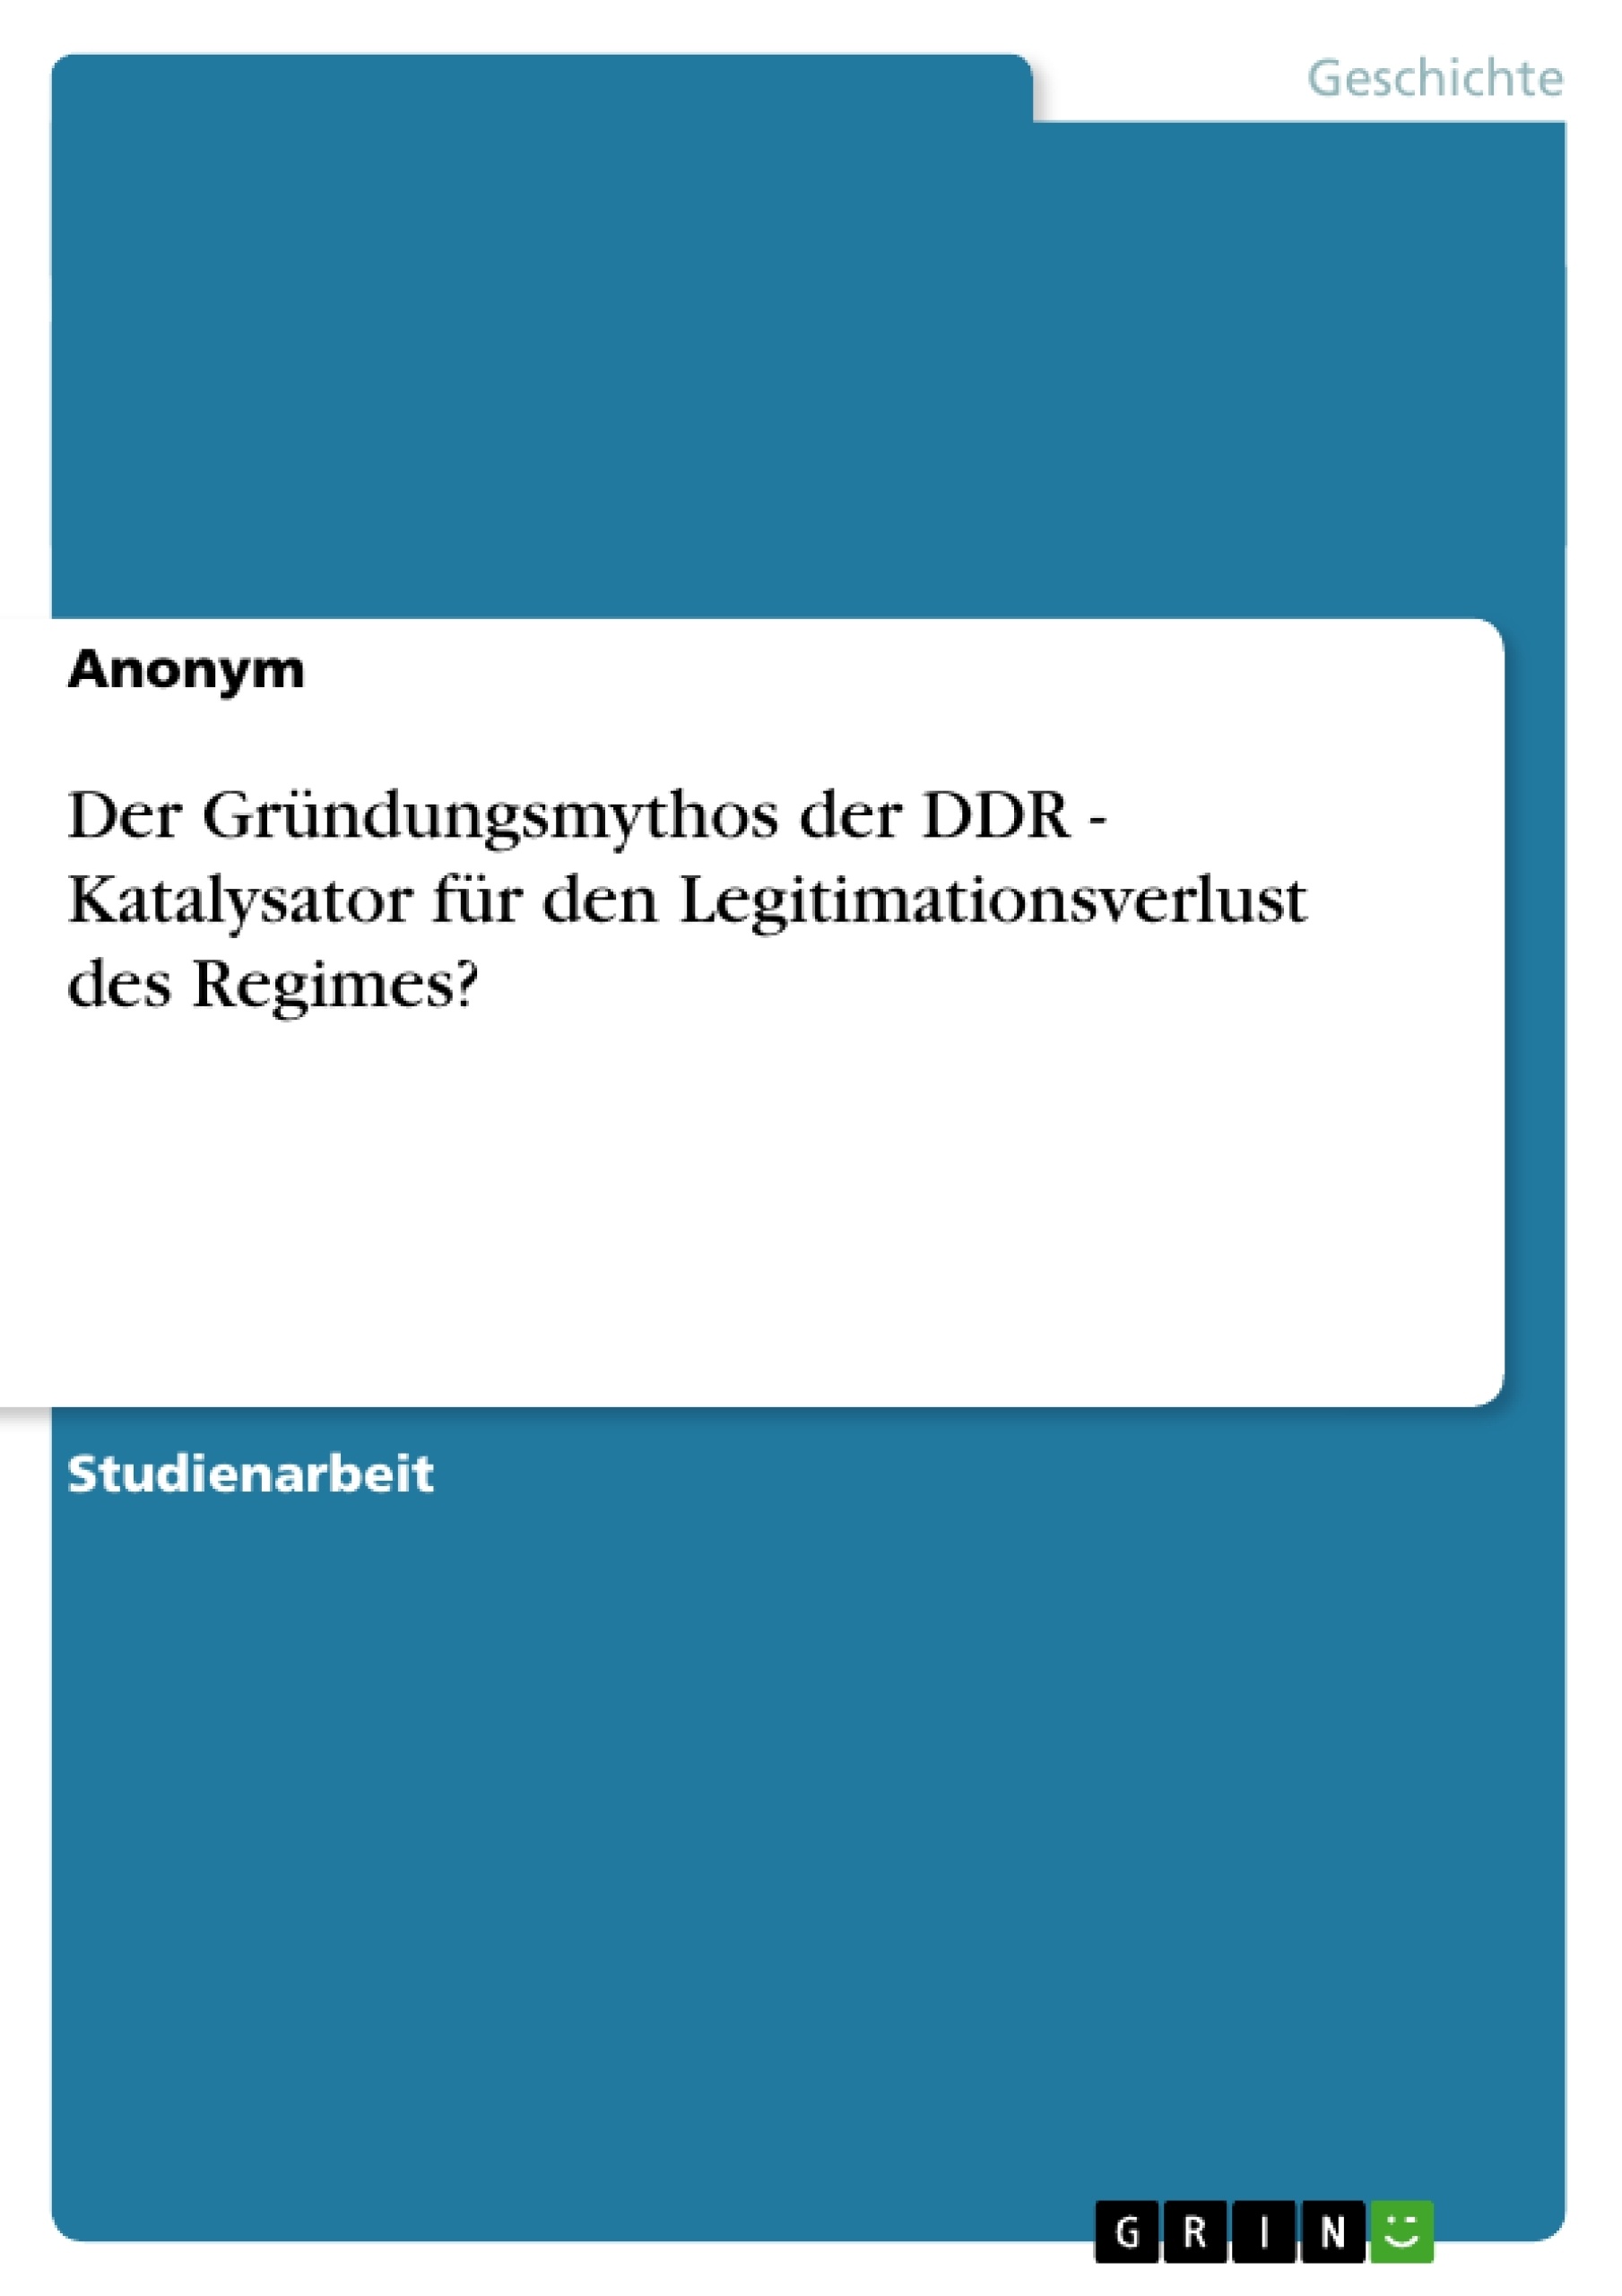 Title: Der Gründungsmythos der DDR - Katalysator für den Legitimationsverlust des Regimes?